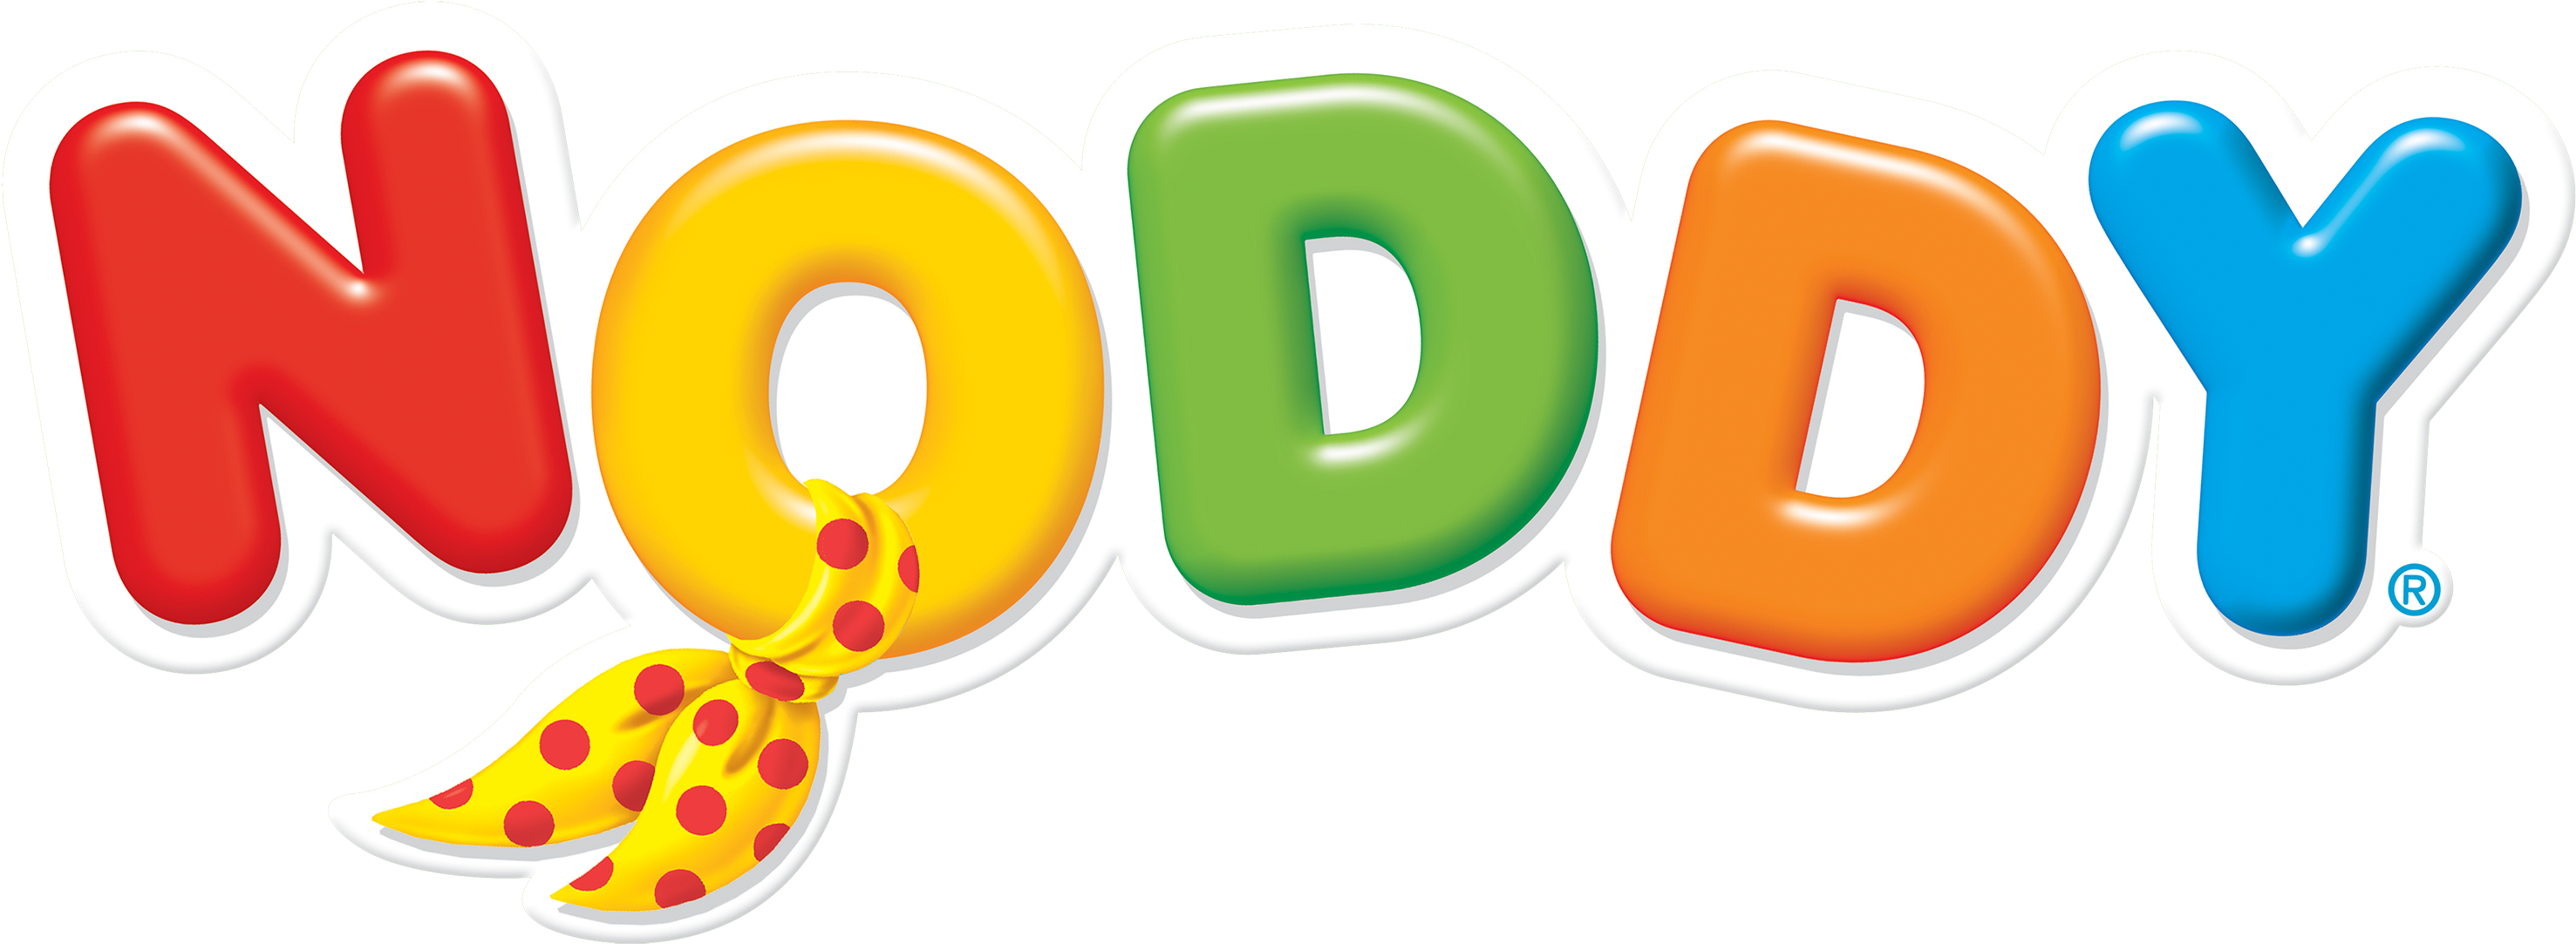 Noddy - - Noddy Toyland Detective Logo (3000x1151)